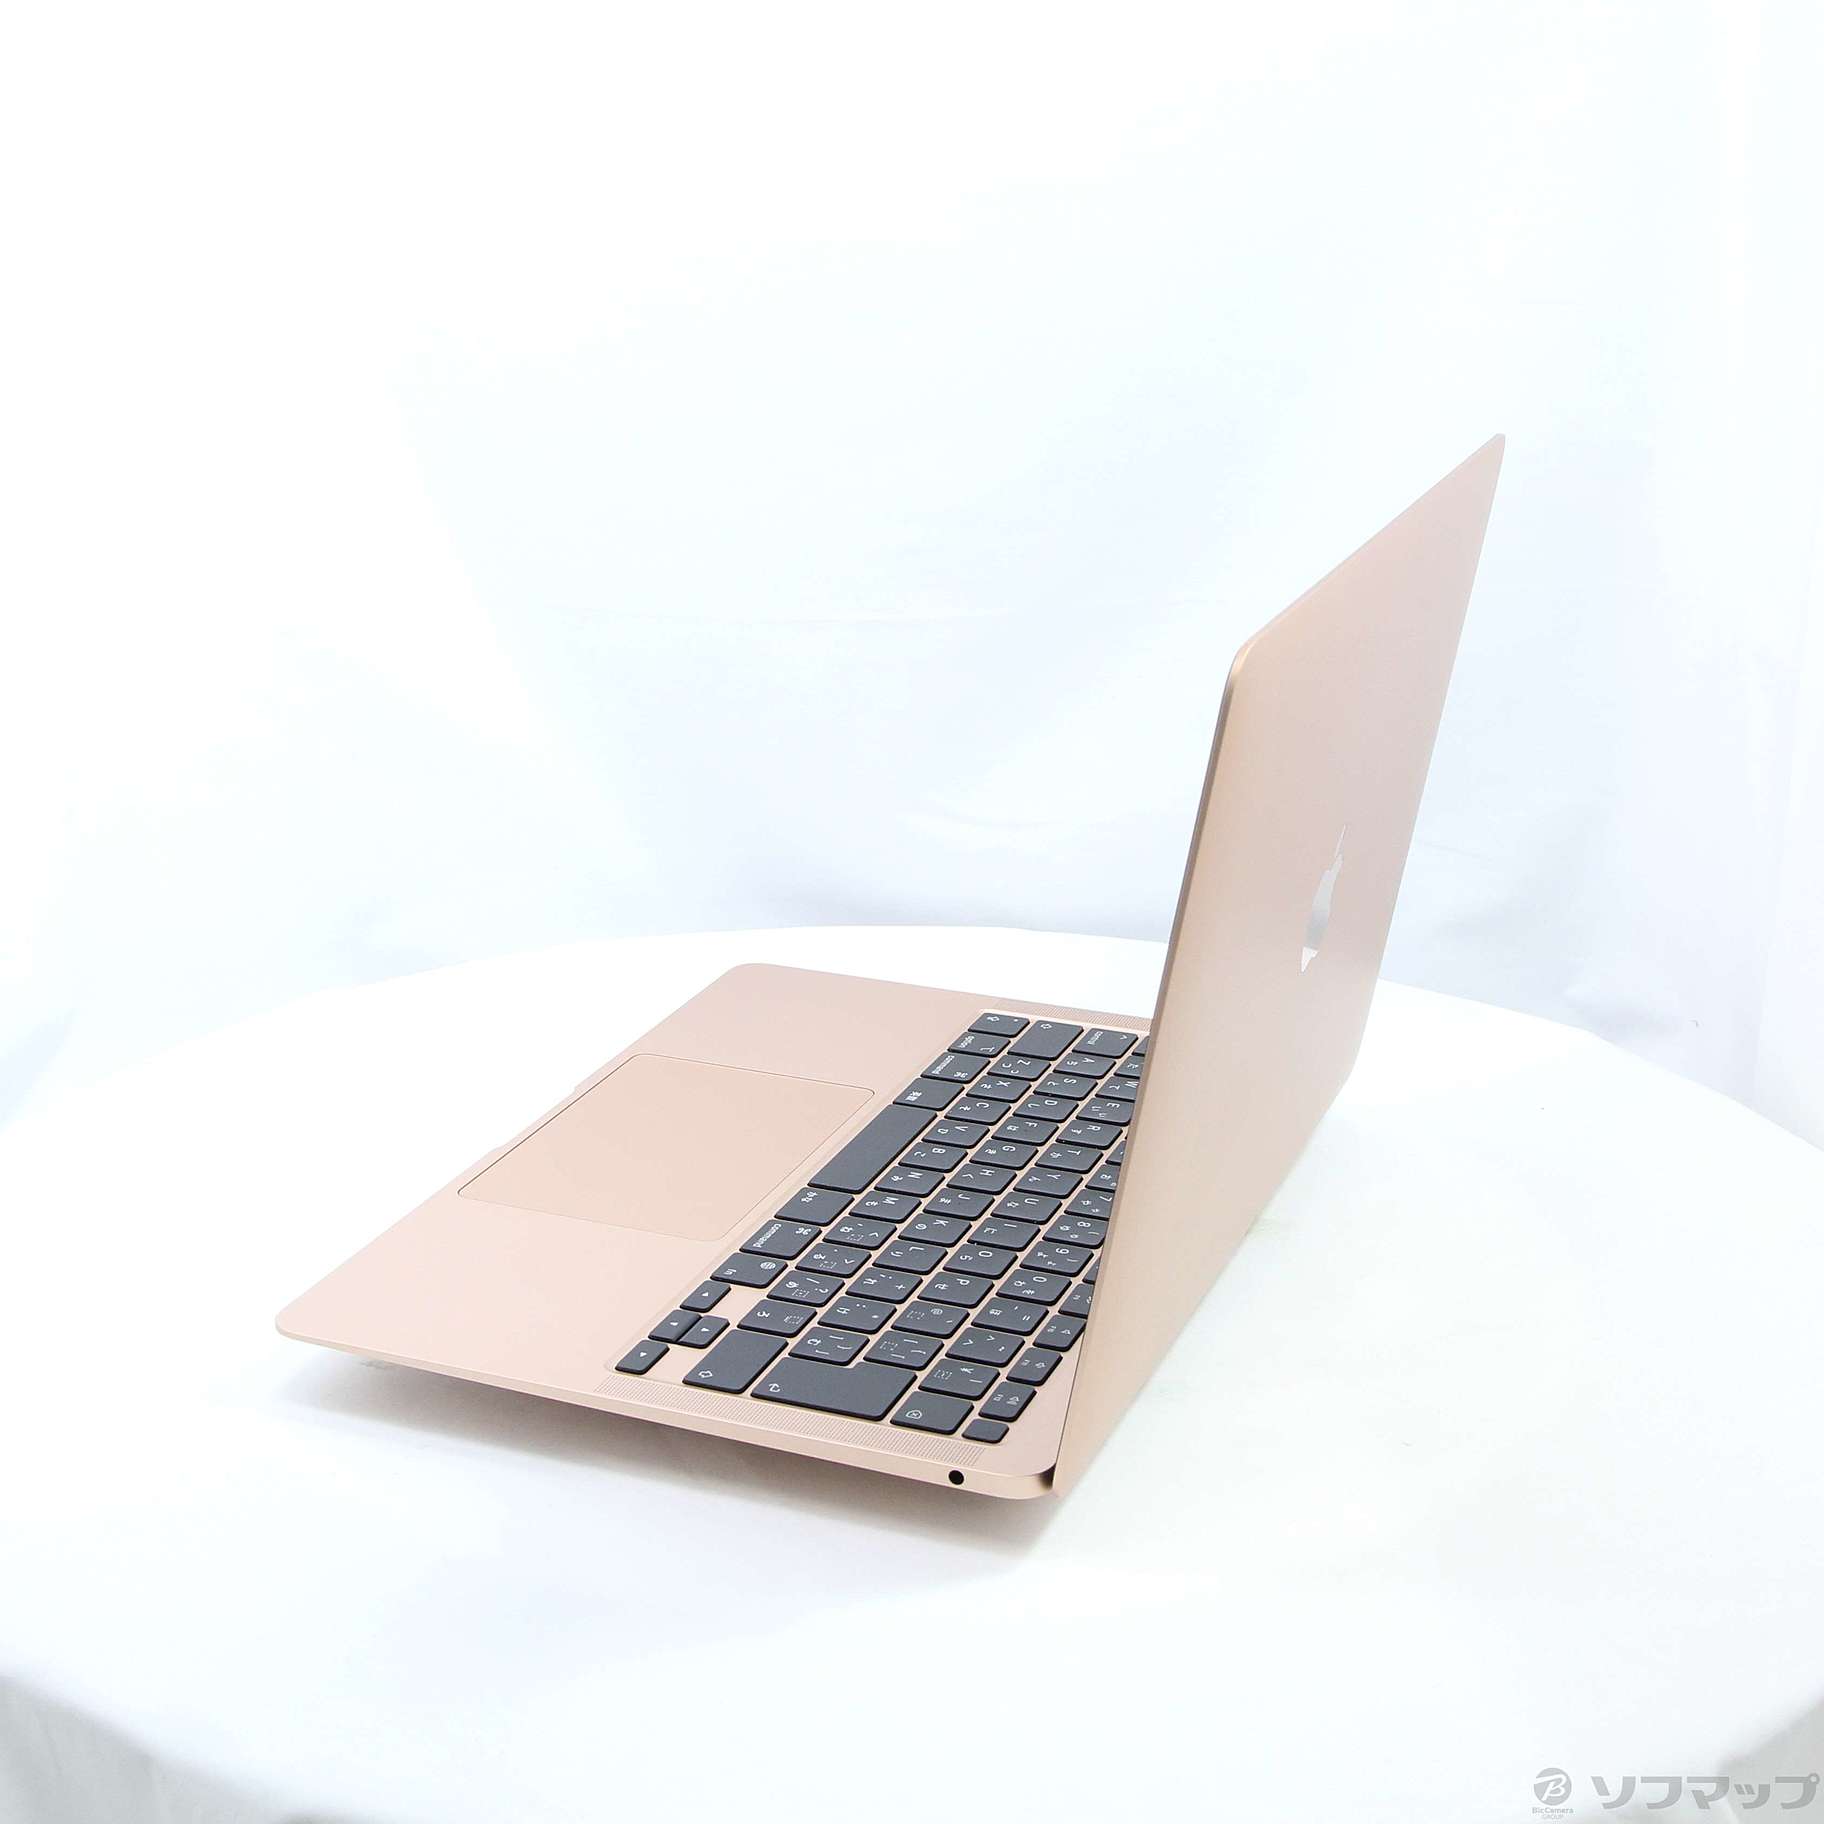 MacBook Air 13.3 MGNE3J/A [ゴールド]